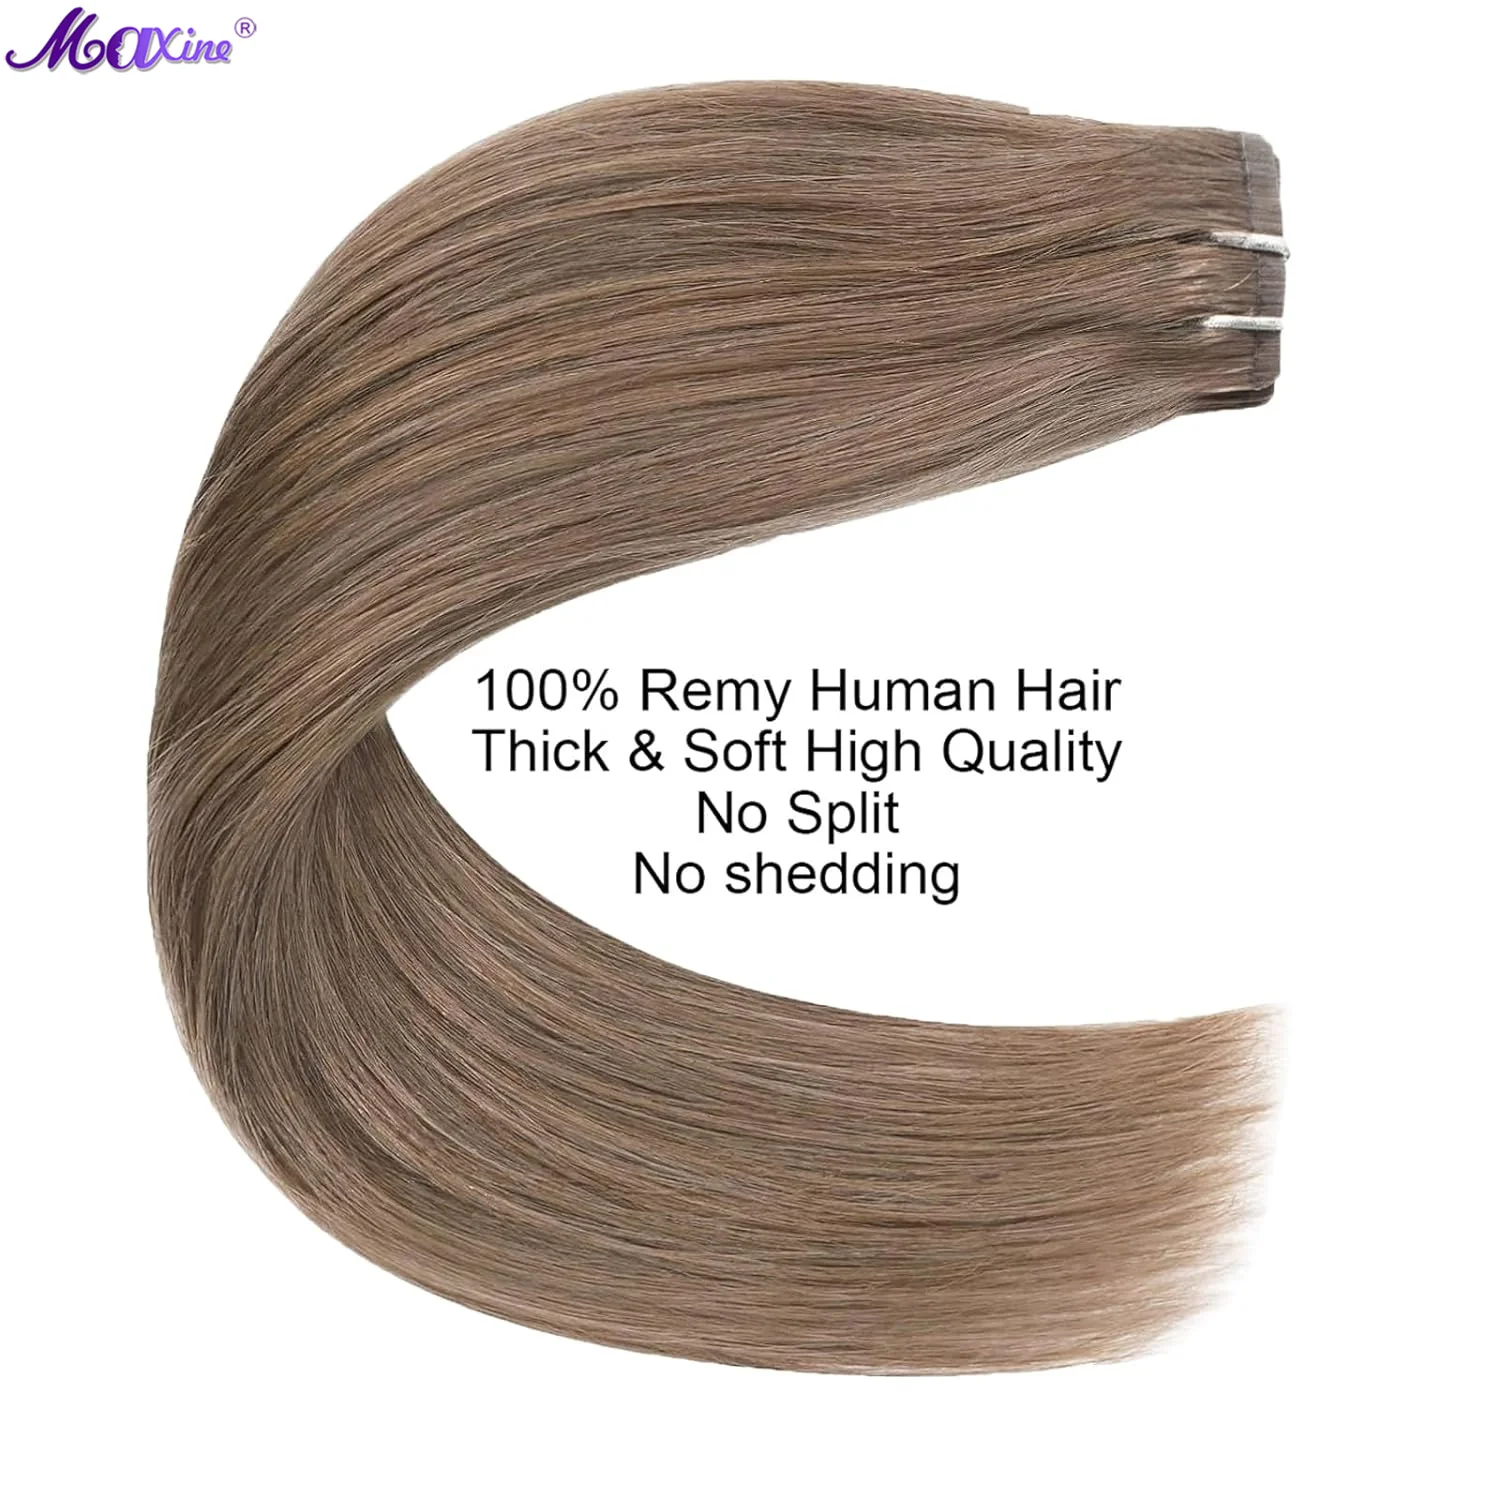 Накладные человеческие волосы на клипсе, Платиновые светлые натуральные невидимые волосы без повреждения кутикулы, 18 дюймов, Натуральные Прямые волосы на клипсе